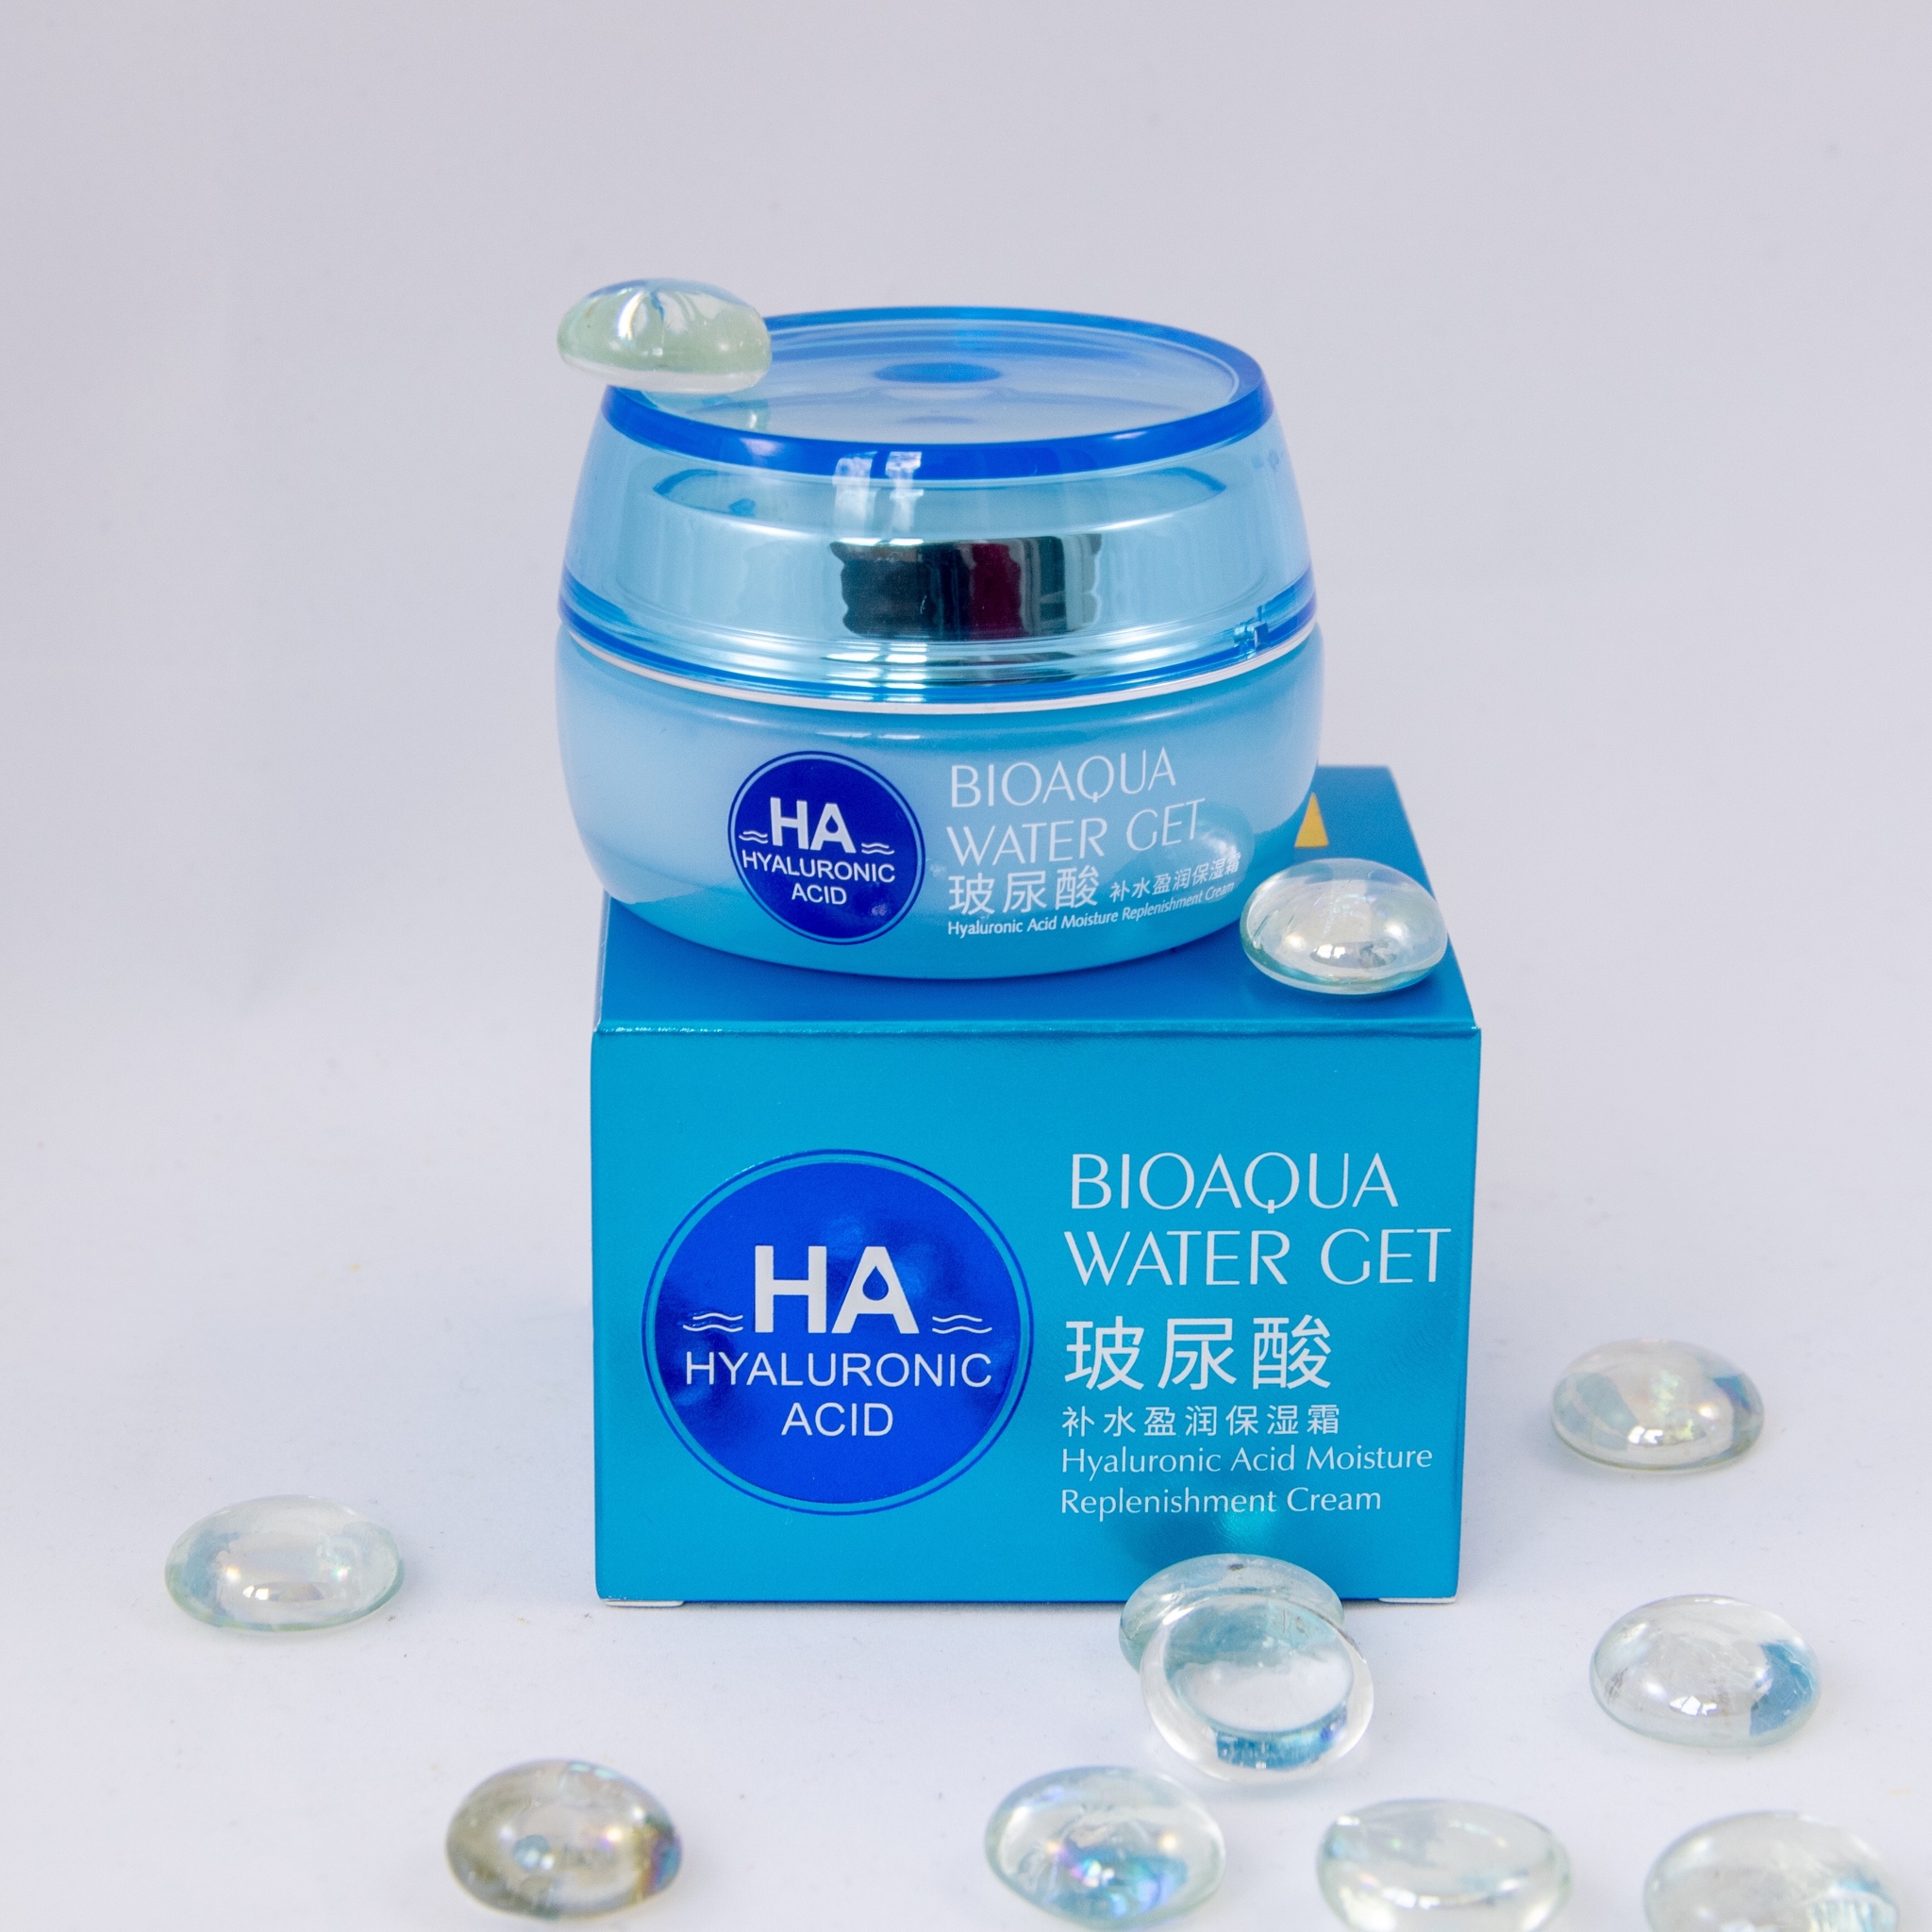 Гиалуроновый крем для лица Bioaqua Hyaluronic Acid Water Get